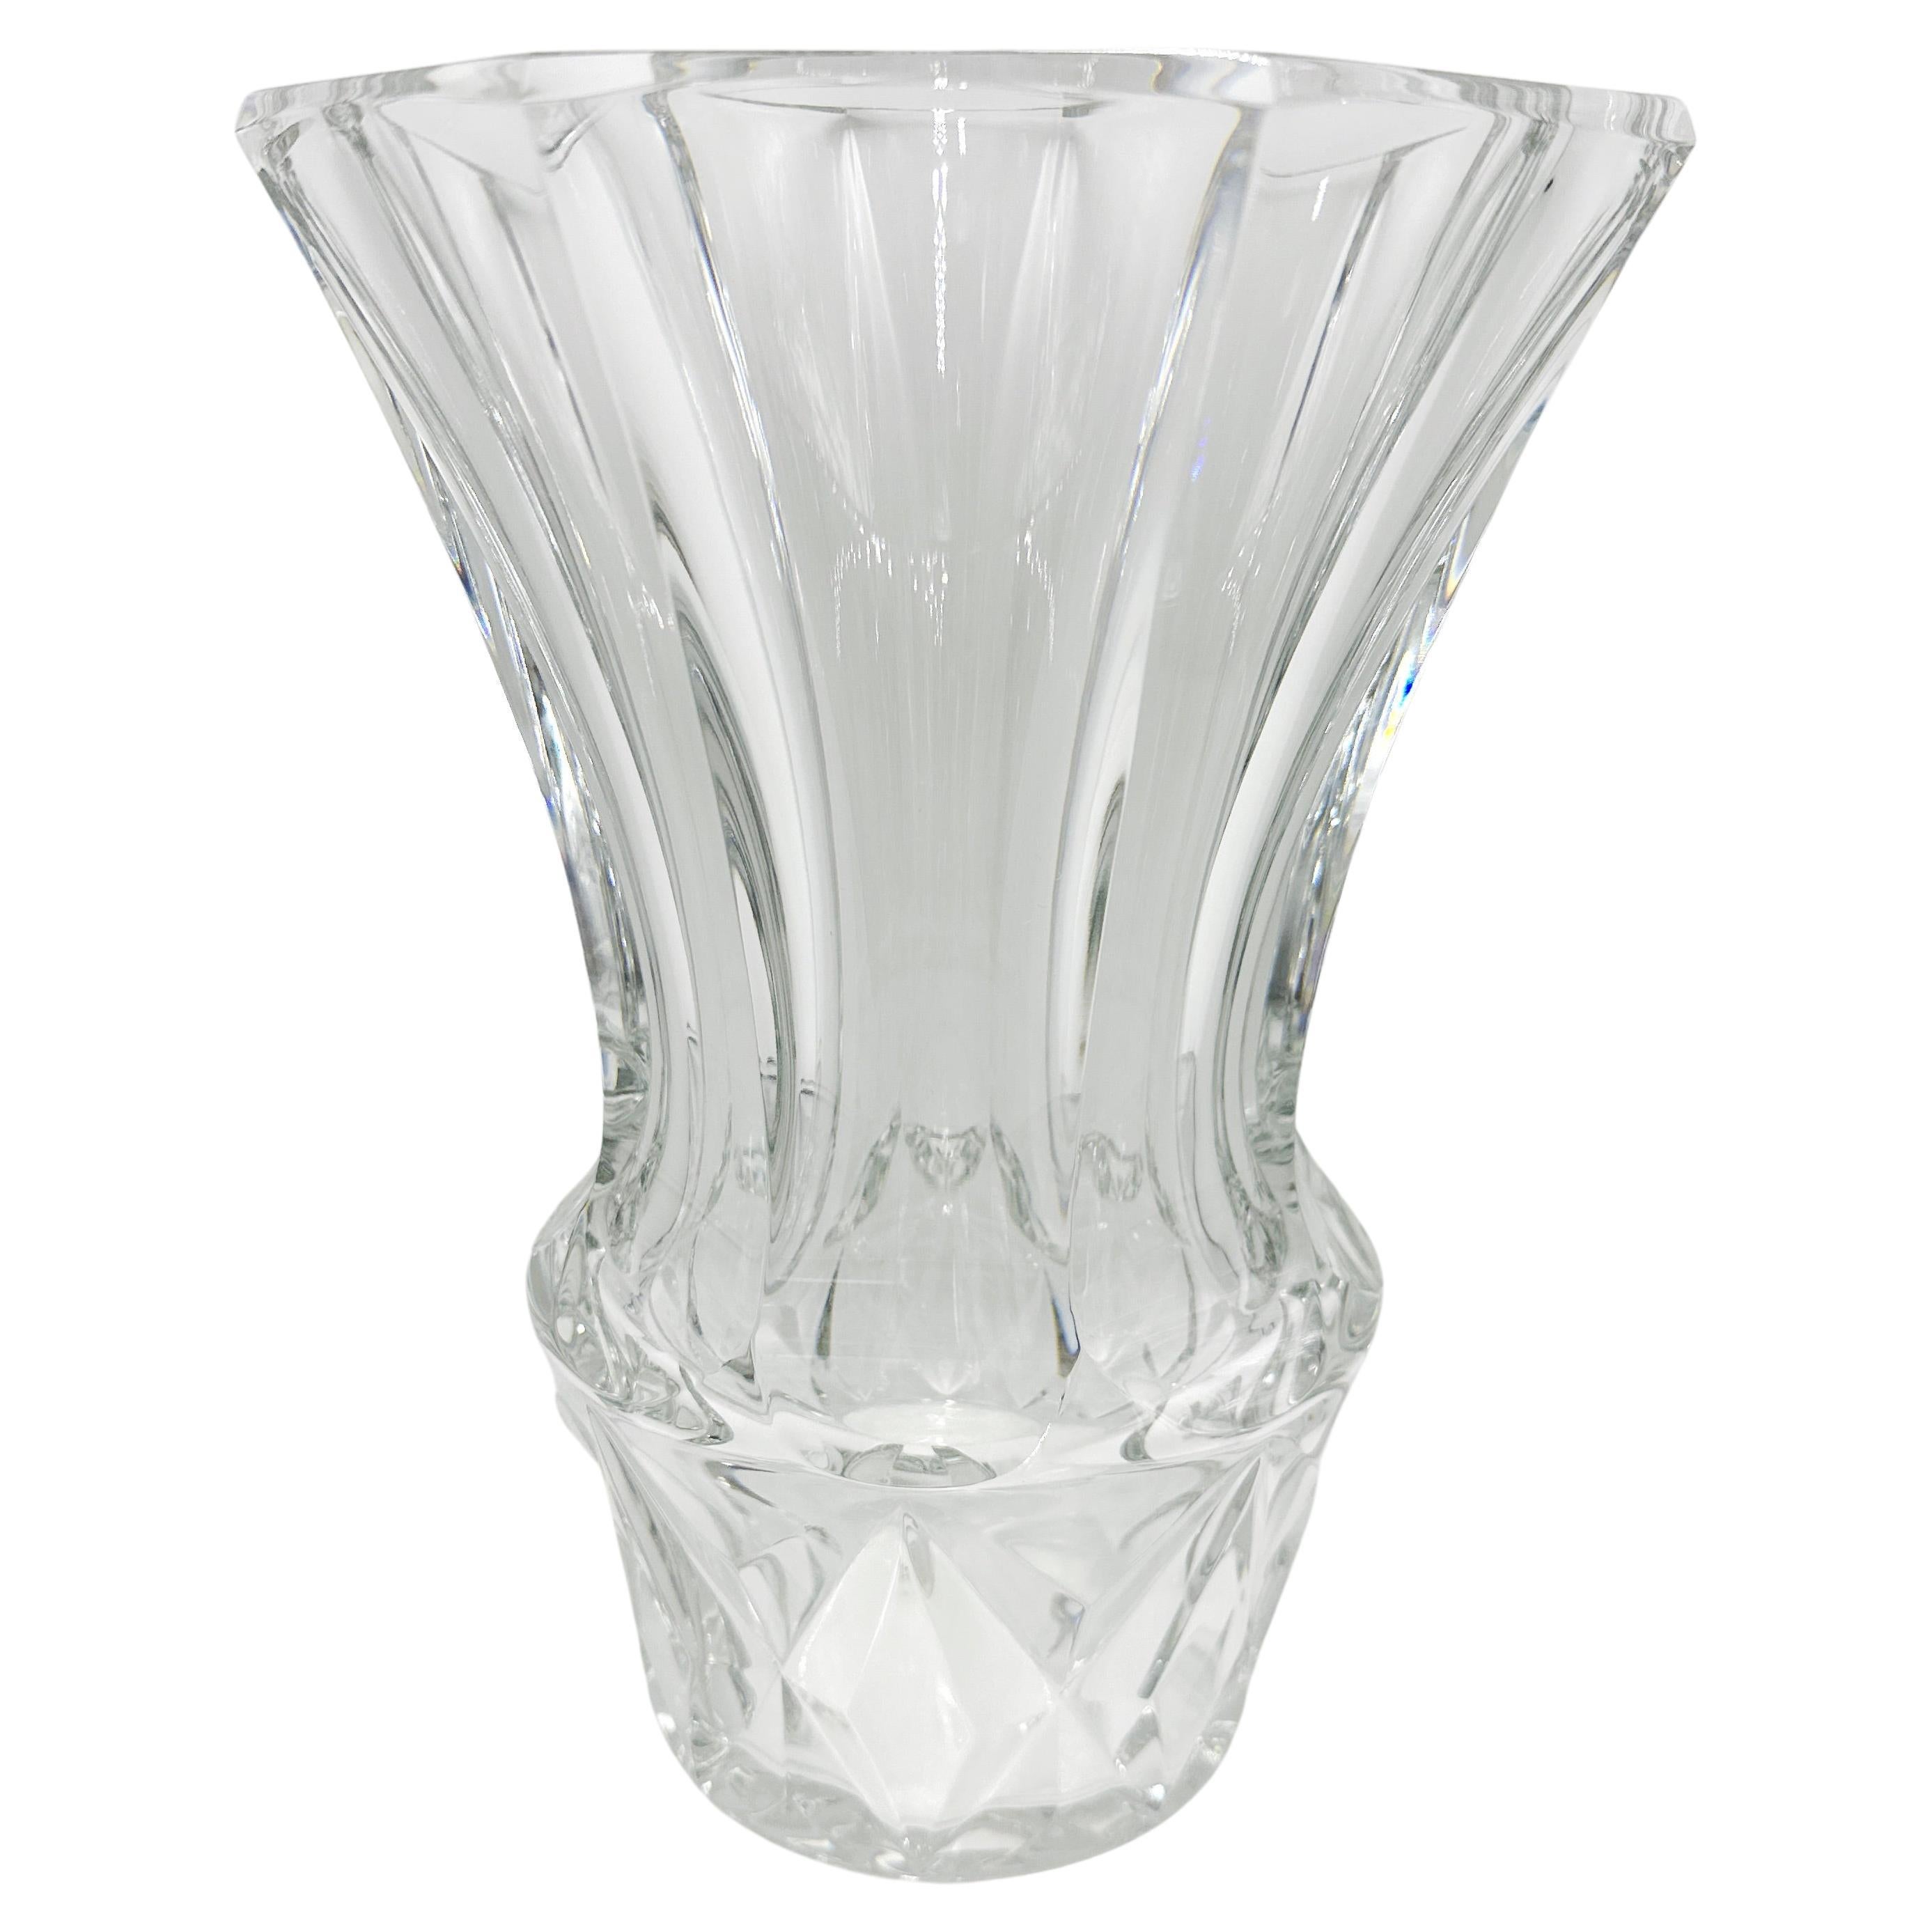 BACCARAT Vintage French Large Crystal Vase. 10.75"H